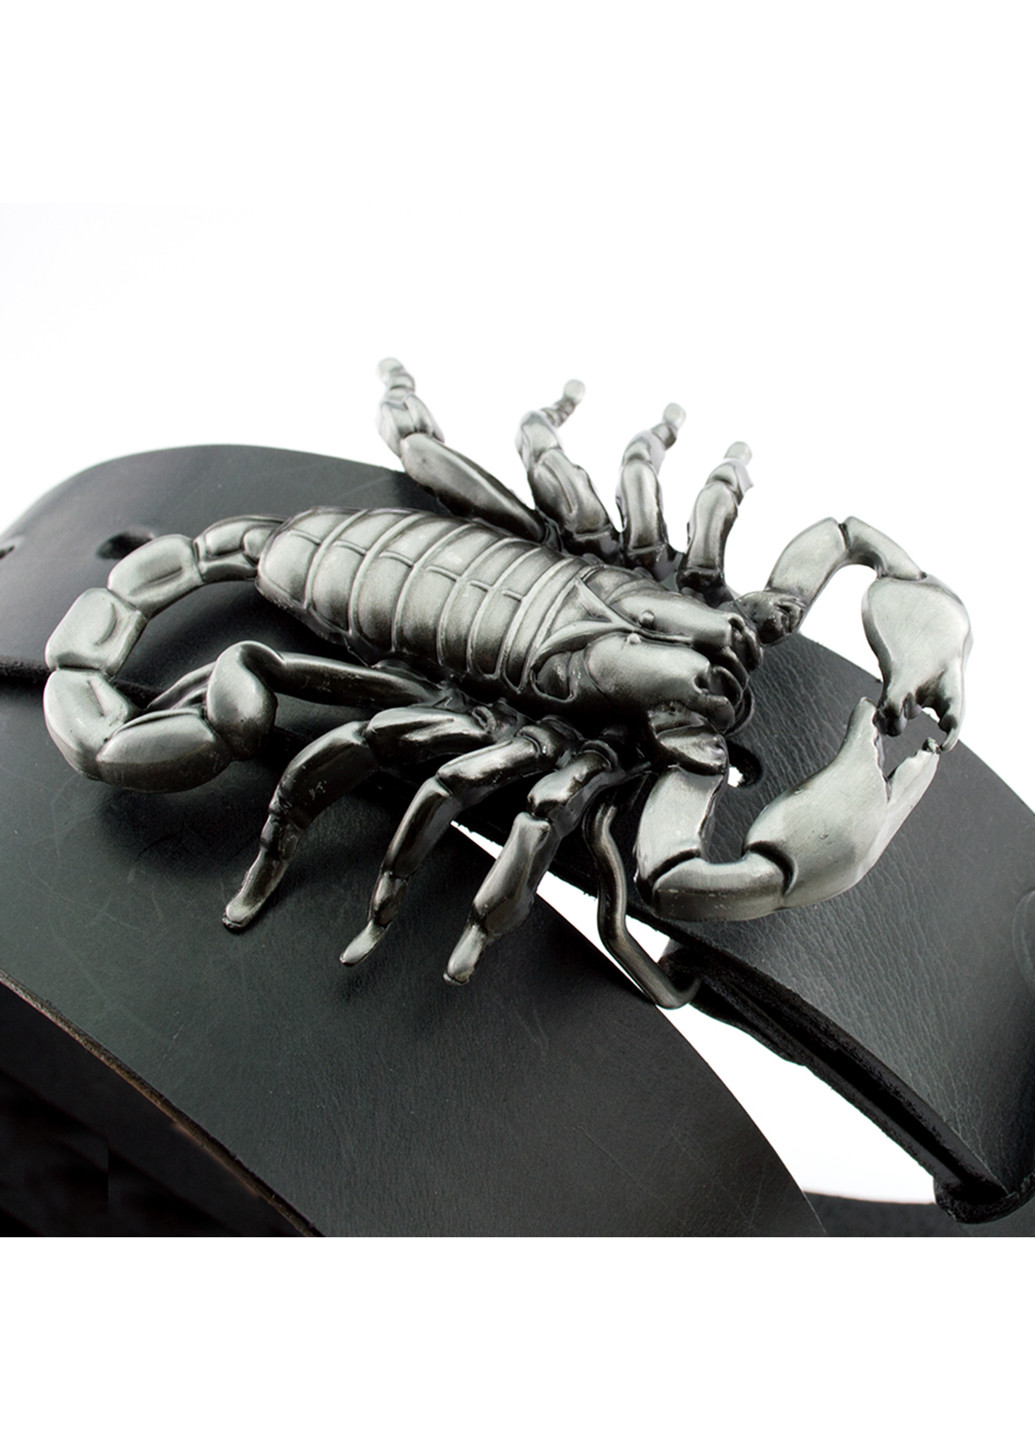 Ремень мужской кожаный 8004 со скорпионом черный (130 см) Buffalo Wild (204850351)